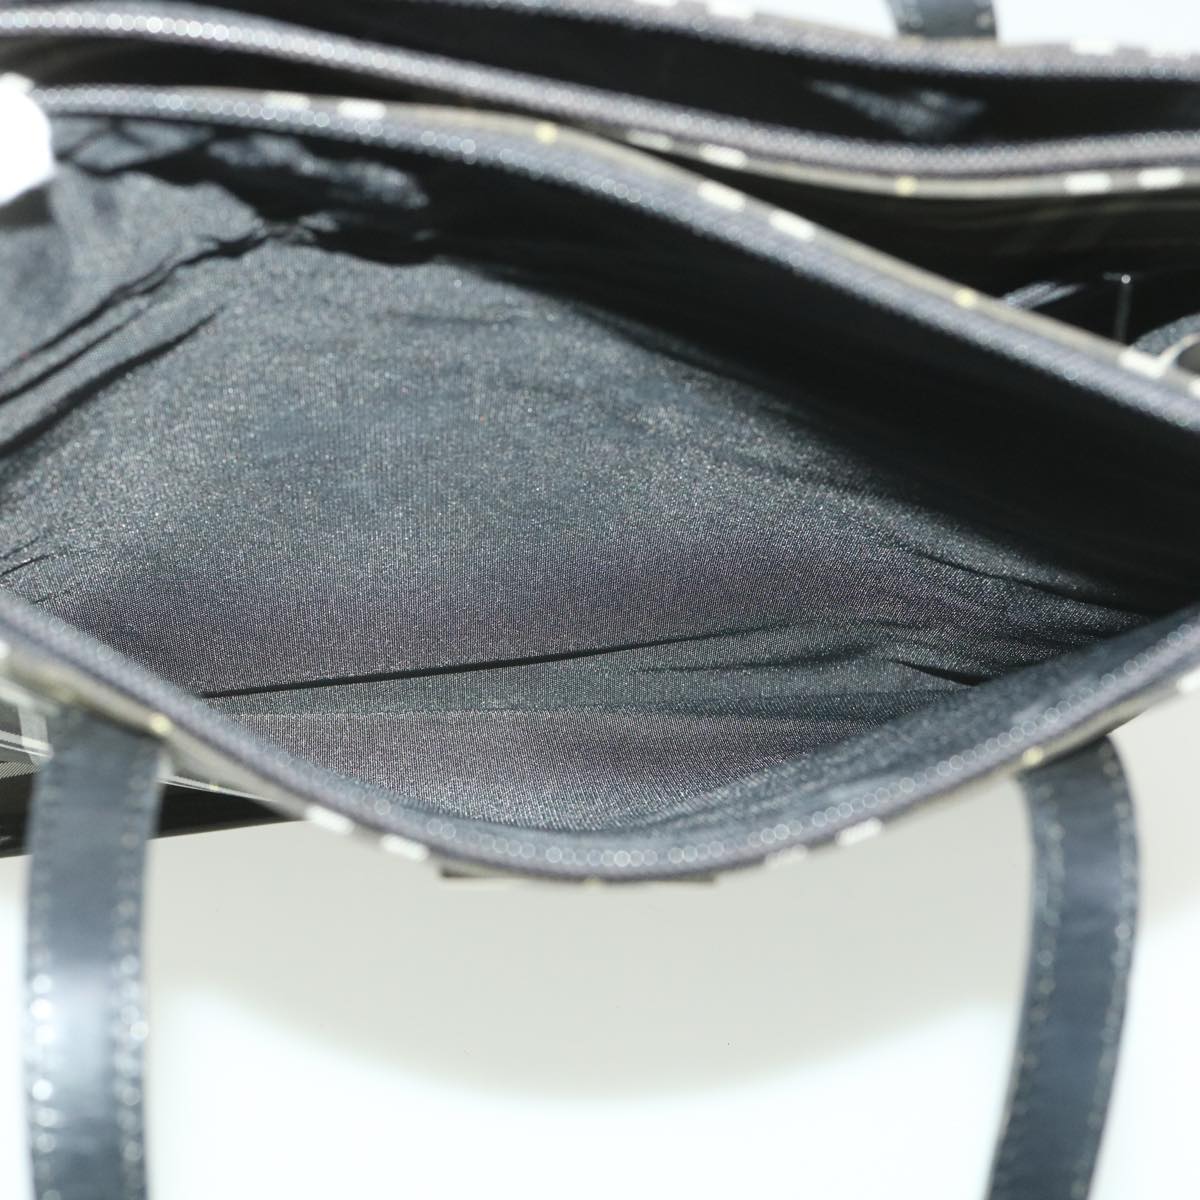 Burberrys Nova Check Blue Label Tote Bag Nylon Khaki Black Auth 36245